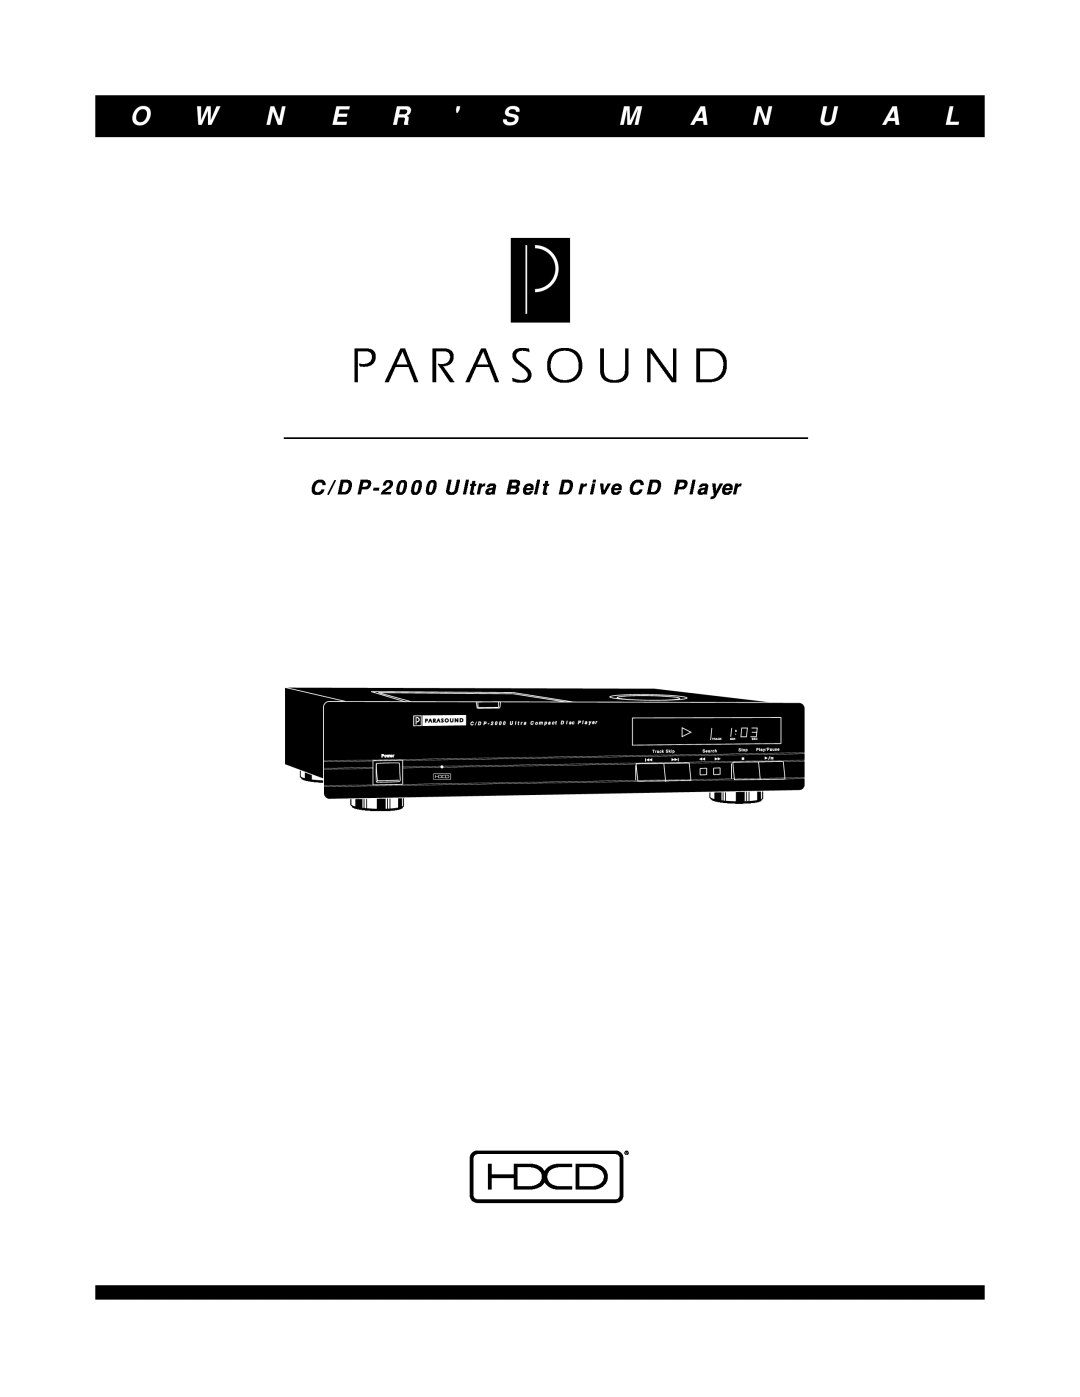 Parasound owner manual O W N E R S, M A N U A L, C/DP-2000Ultra Belt Drive CD Player, C / D P, U l t r a, C o m p a c t 